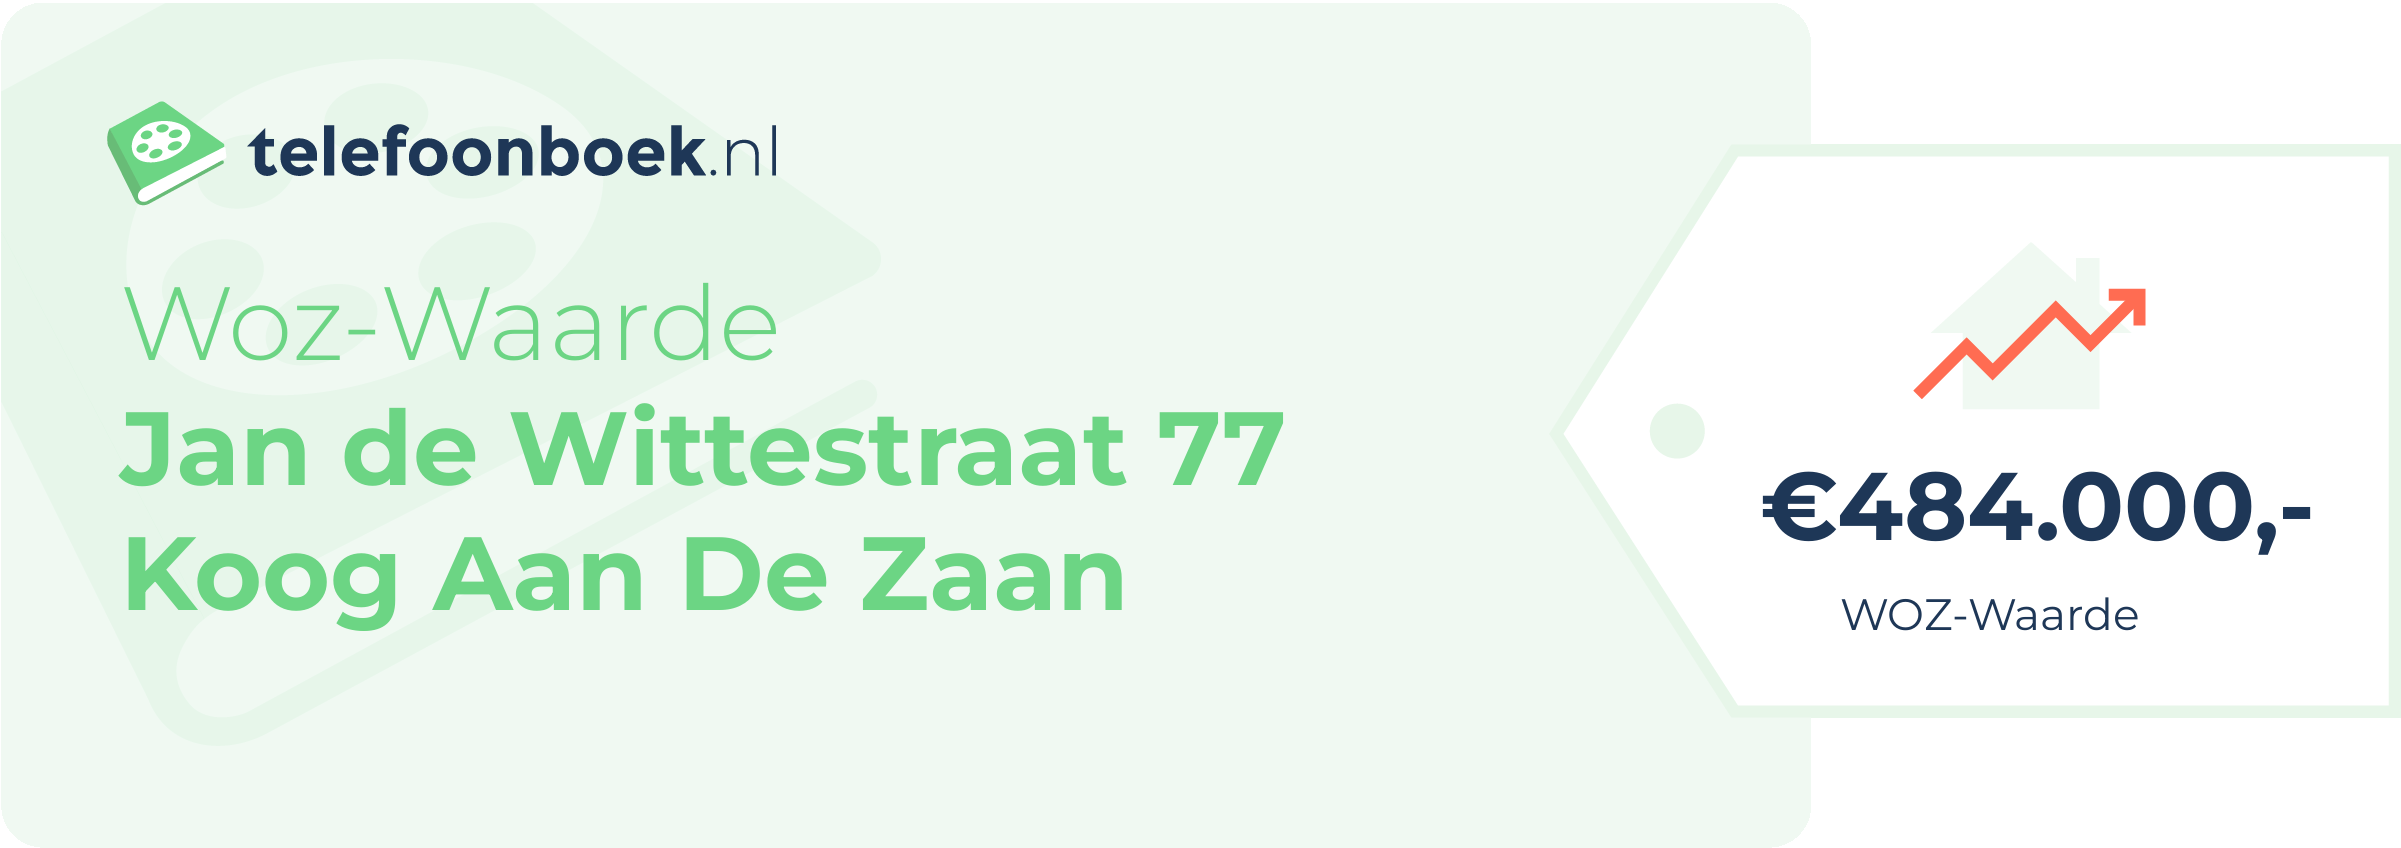 WOZ-waarde Jan De Wittestraat 77 Koog Aan De Zaan